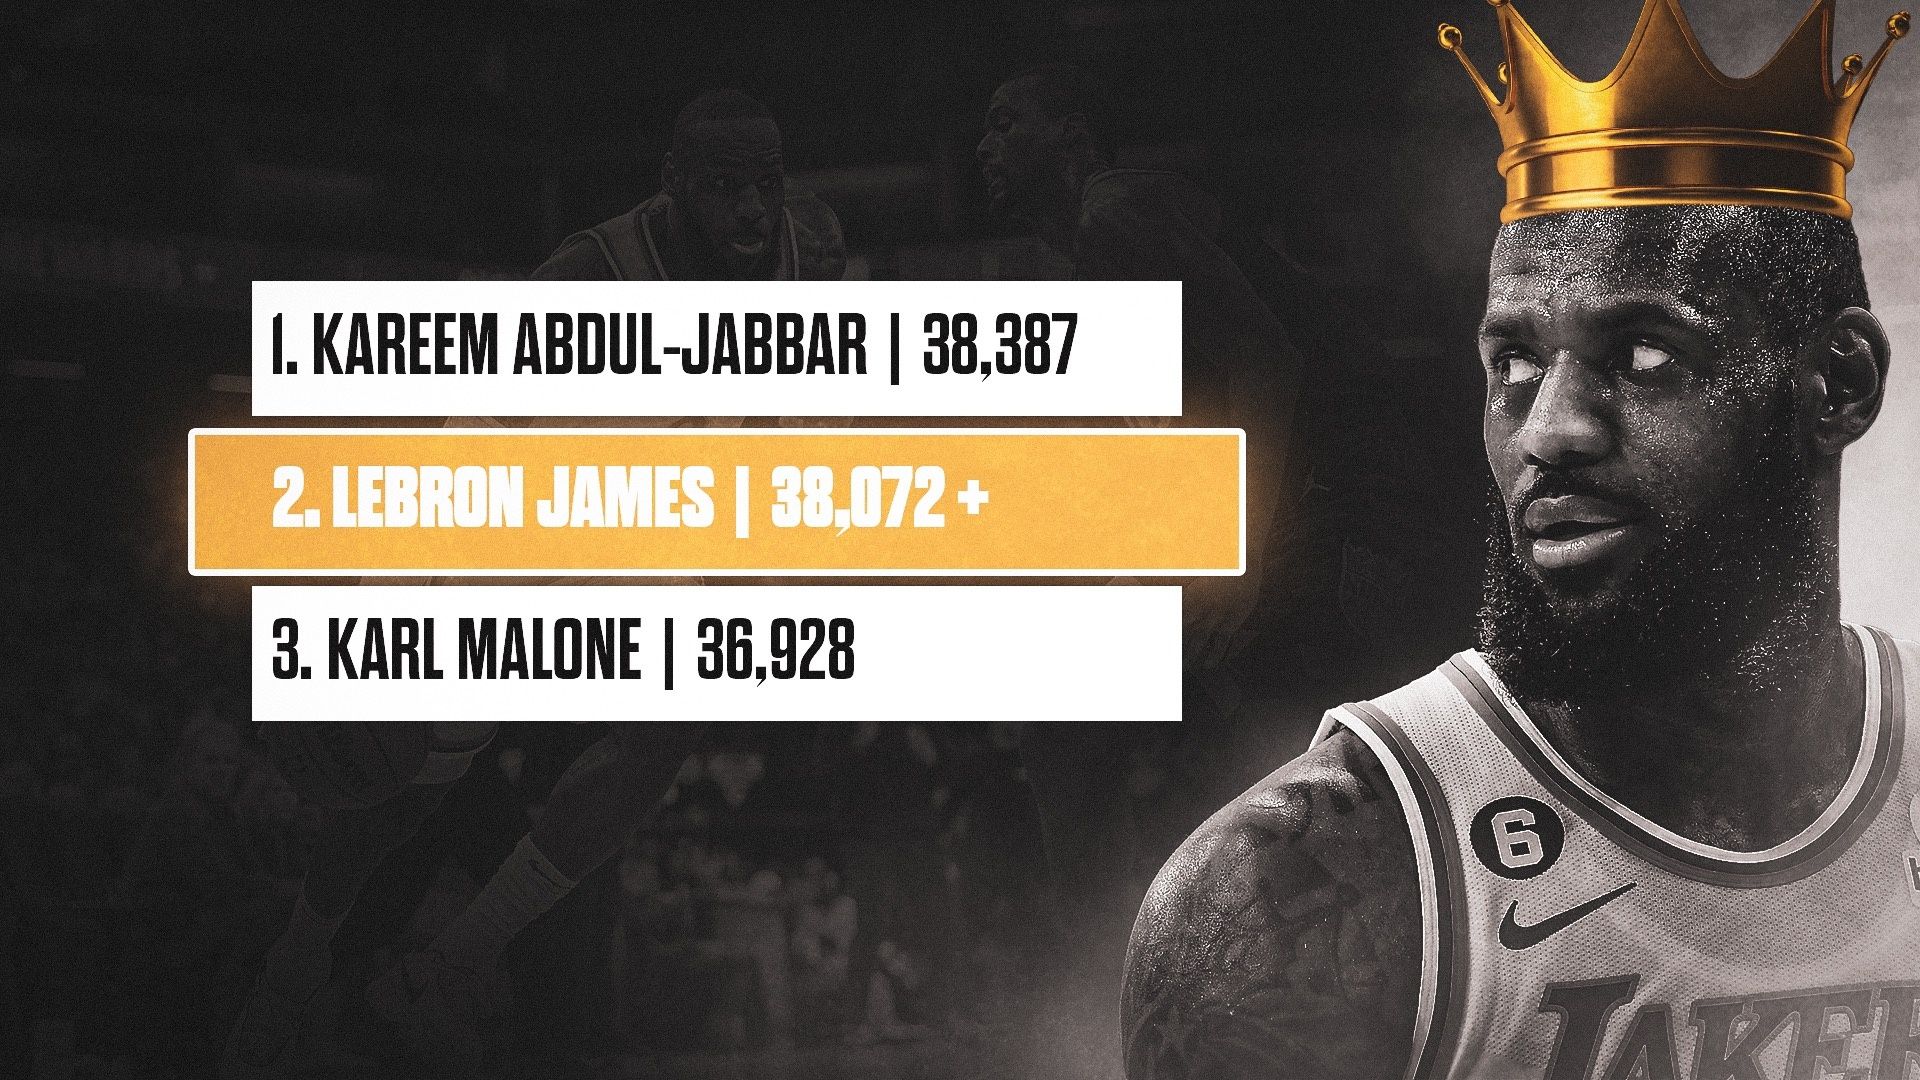 King James primed to take crown as NBA scoring king